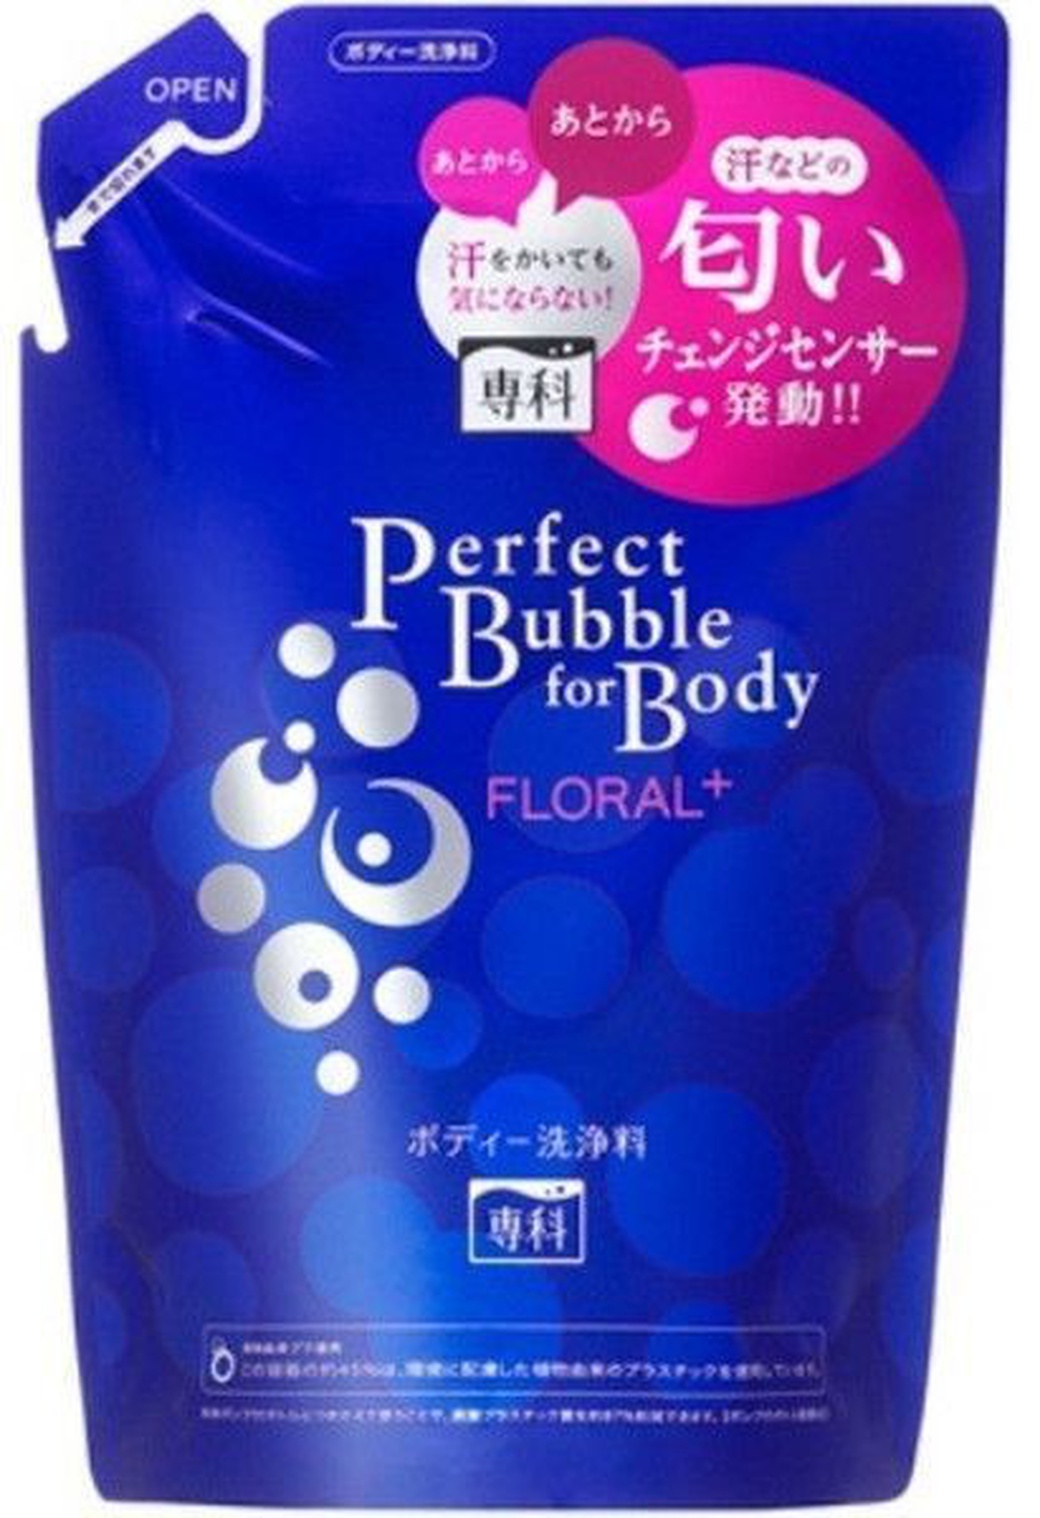 Shiseido "Perfect Bubble Frolal+" Дезодорирующий гель для душа, увлажняющий, с гиалуроновой кислотой, с цветочным ароматом, запасной блок, 350 мл фото